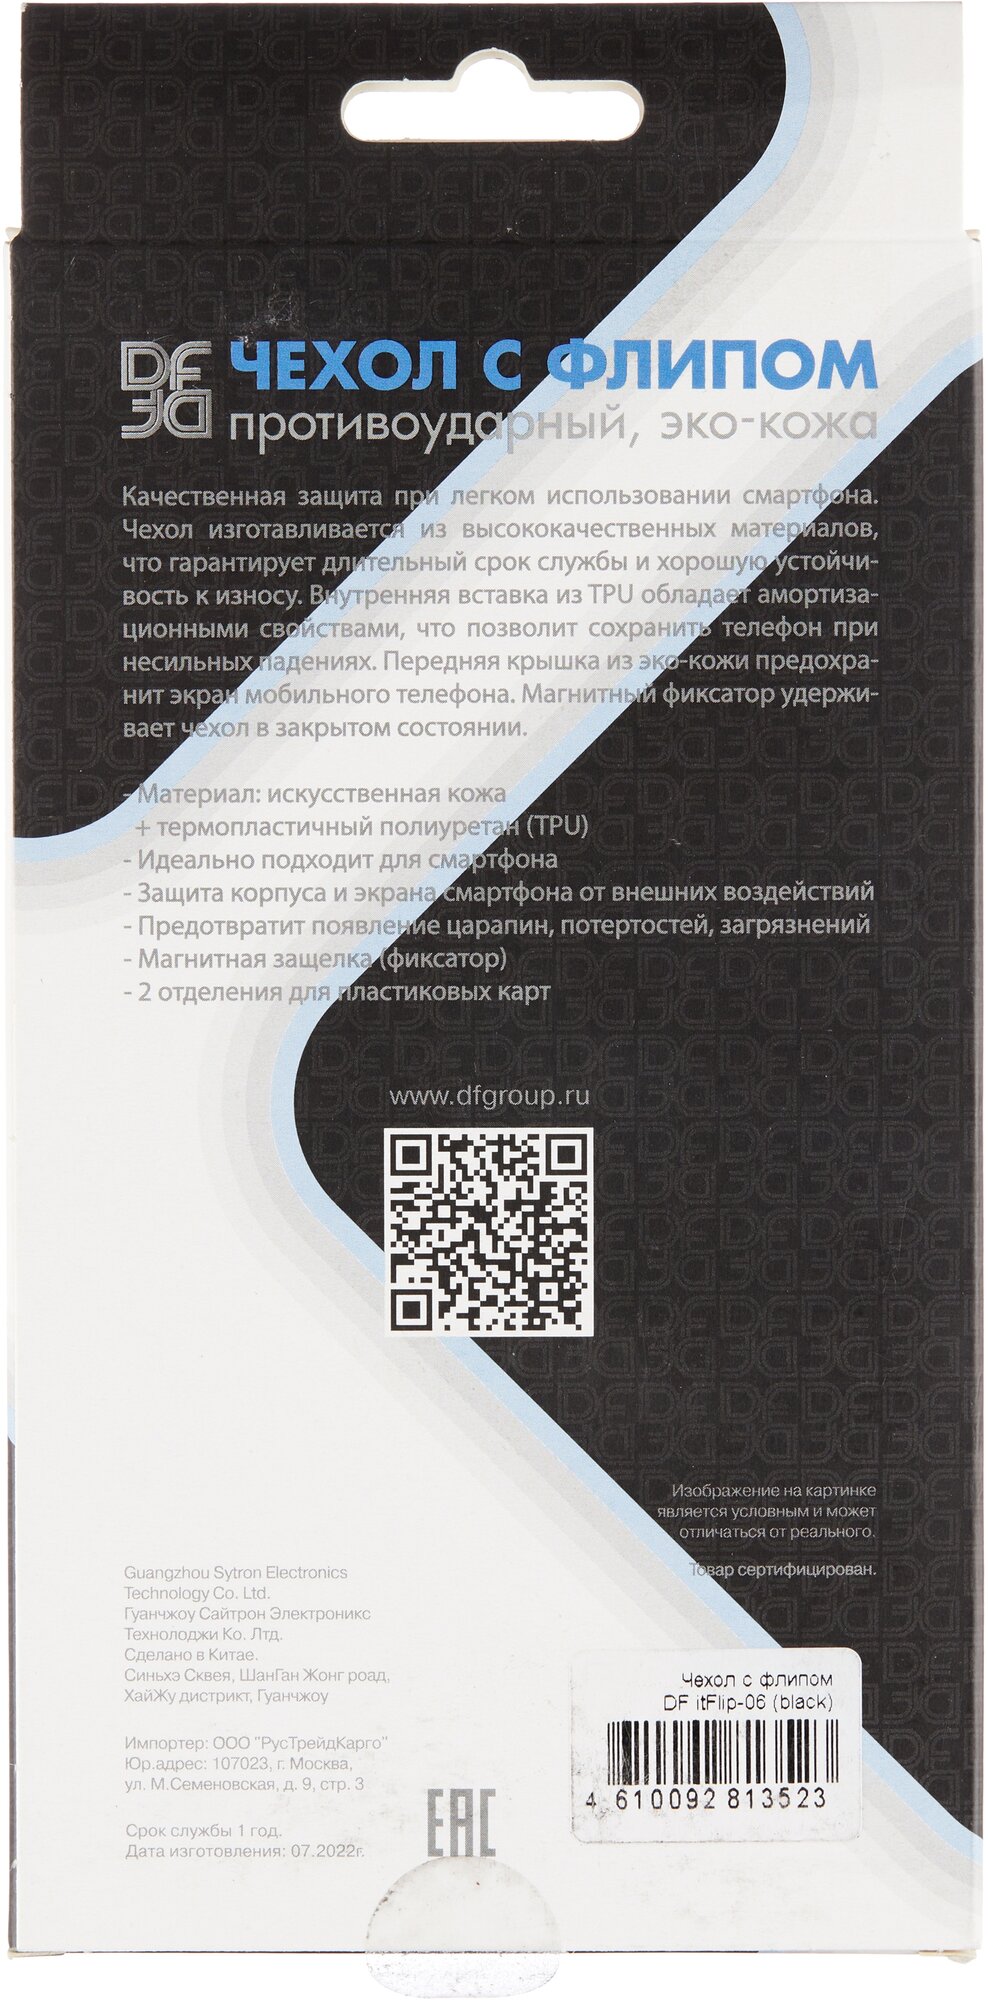 DF / Чехол с флипом для телефона Itel Vision 2S DF itFlip-06 (black) на смартфон Ител Визион 2С / черный - фотография № 5